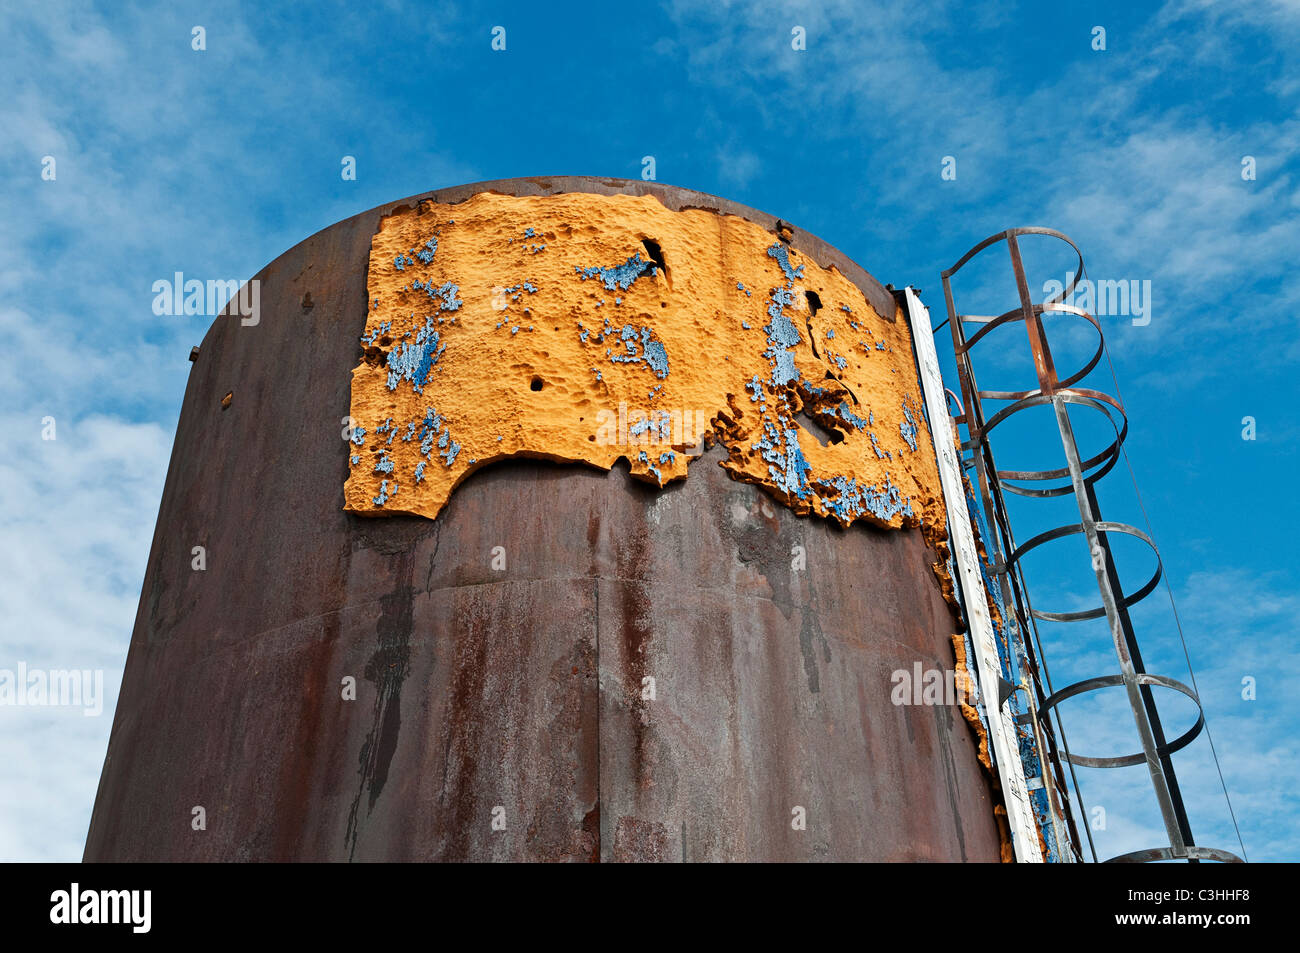 Paesaggio industriale: disattivato un olio grezzo serbatoio di stoccaggio si trova nel mezzo di un campo di grano, Saskatchewan, Canada. Foto Stock